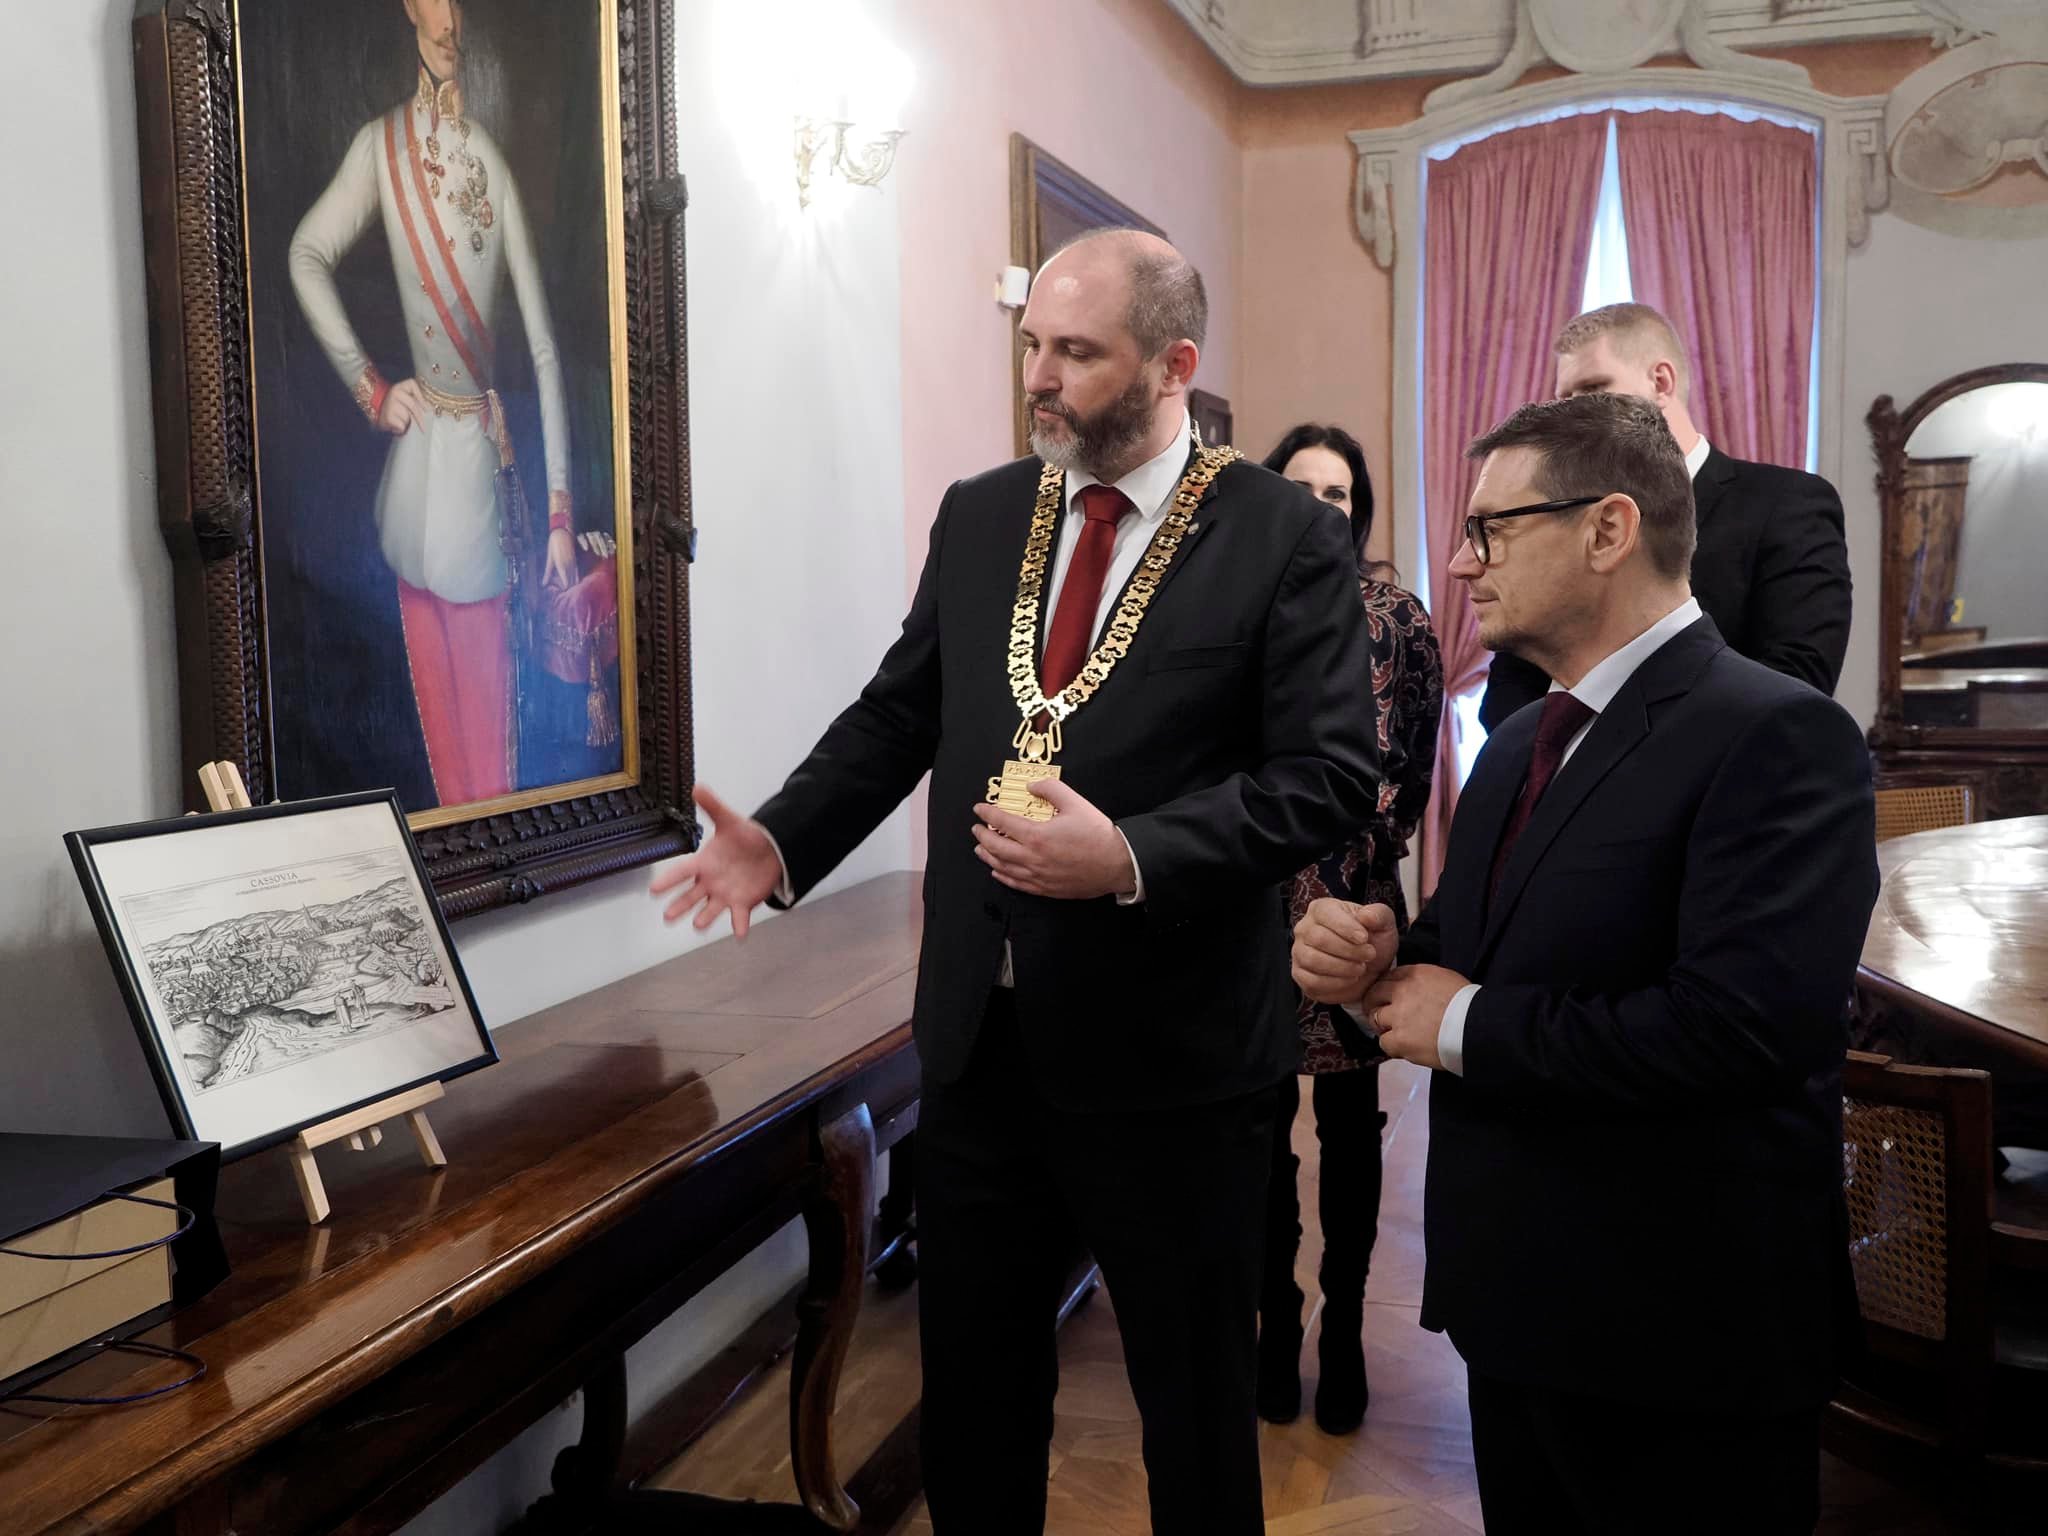 Polaček rokoval s primátorom Prešova o vzájomnej spolupráci a zvládaní krízy